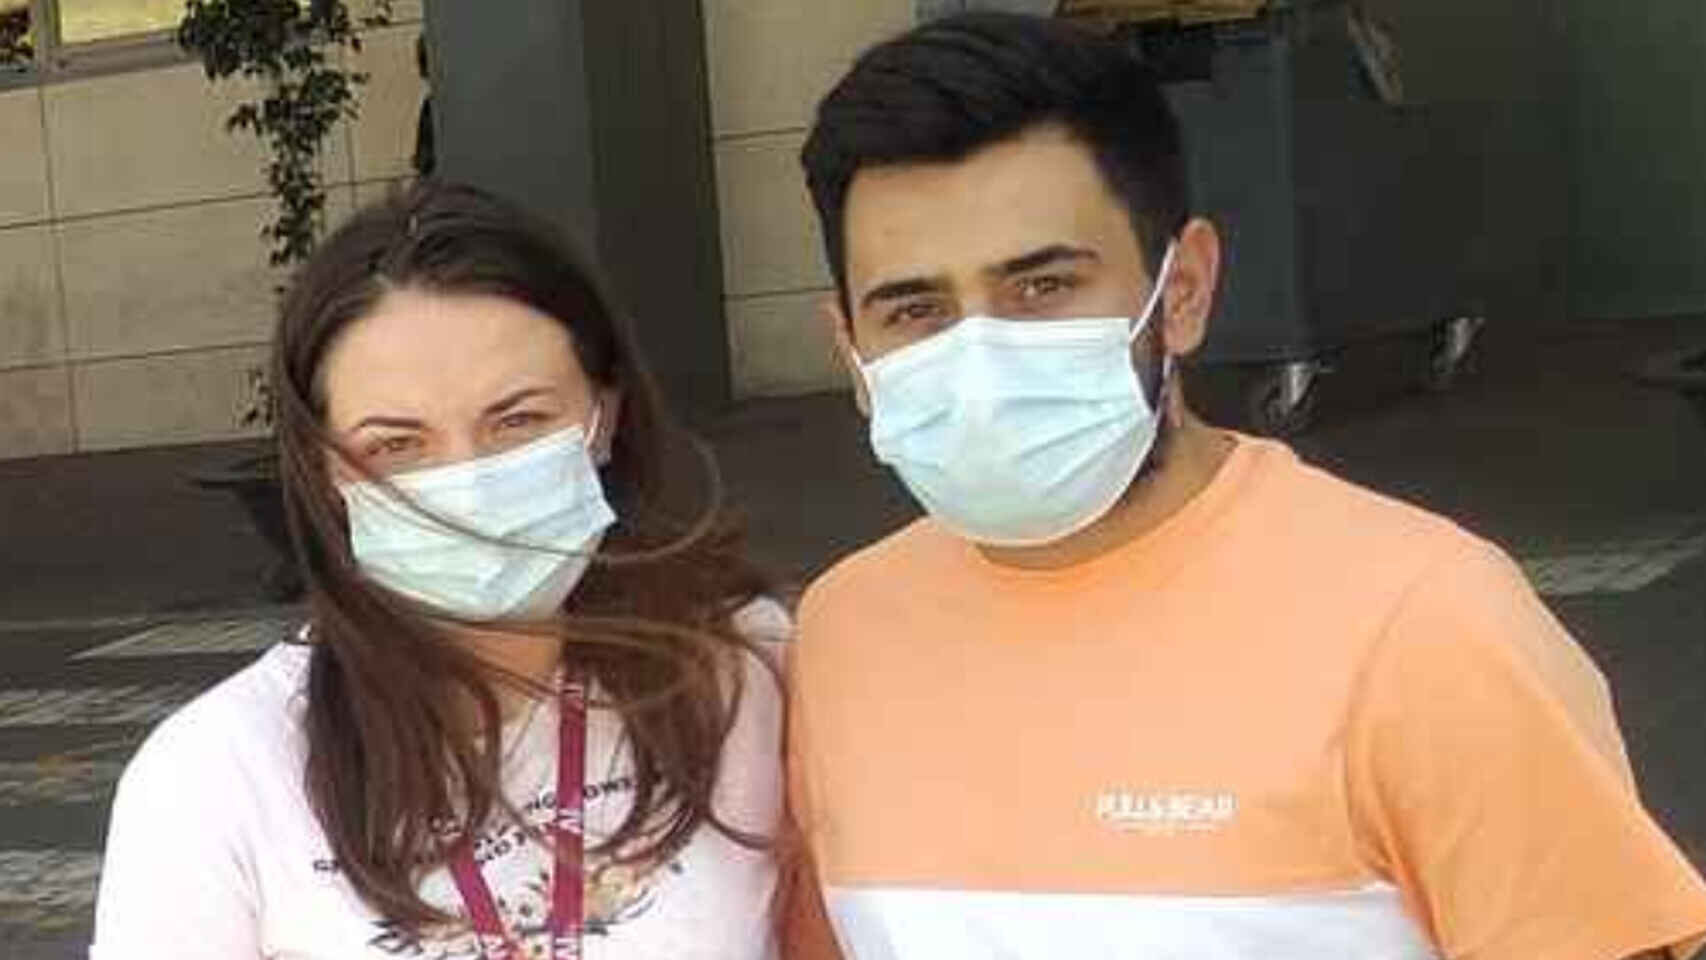 Muere Hugo, el bebé de Murcia, España, cuyos padres llamaron 24 veces a la pediatra tras ser vacunado